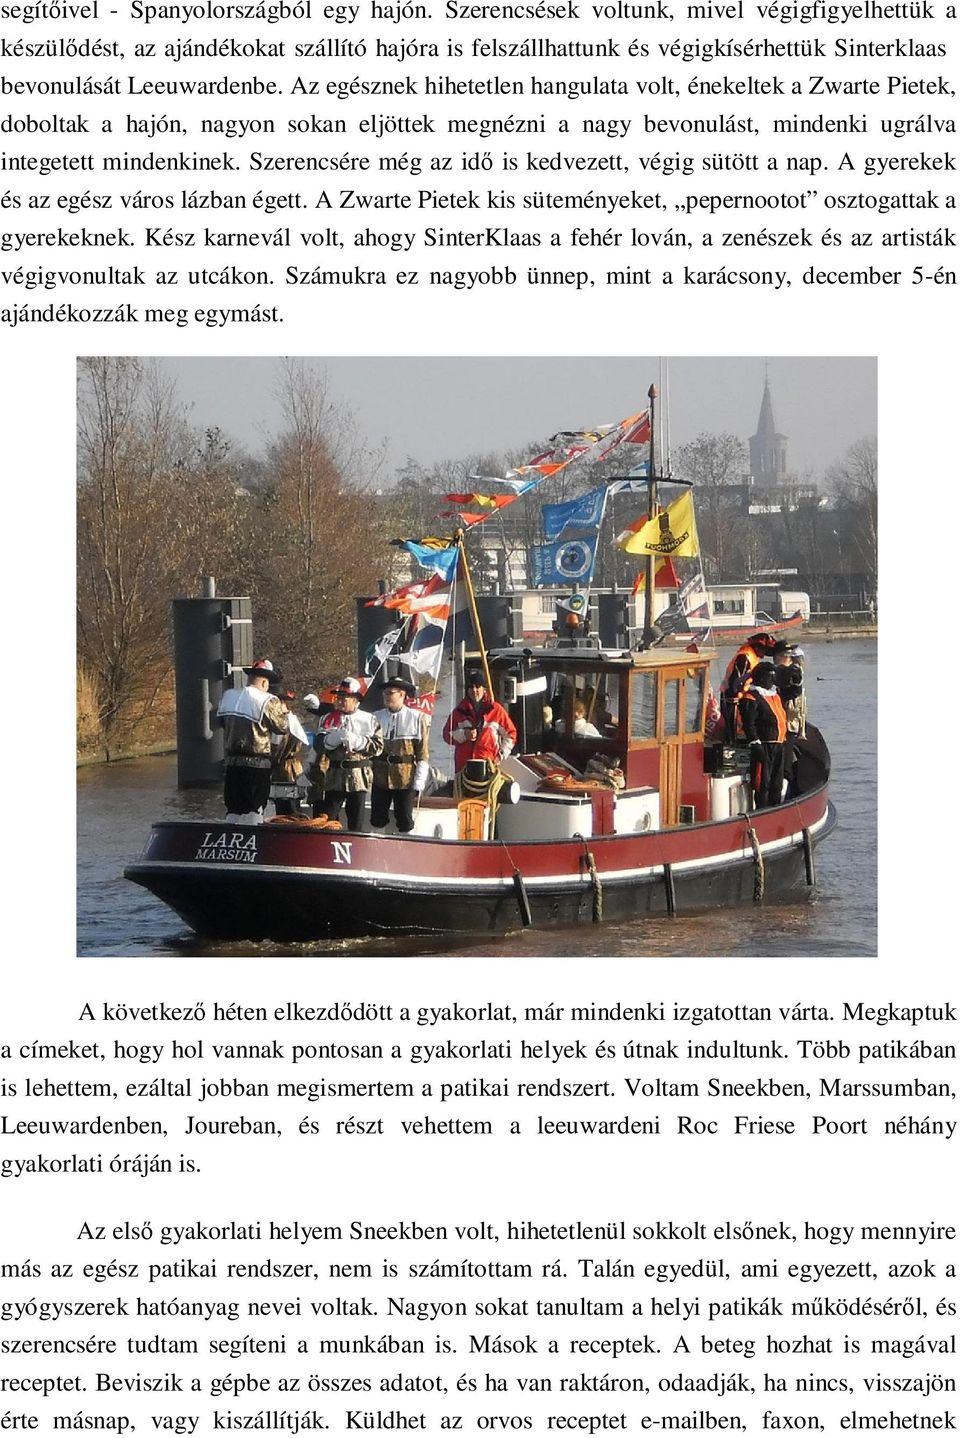 Az egésznek hihetetlen hangulata volt, énekeltek a Zwarte Pietek, doboltak a hajón, nagyon sokan eljöttek megnézni a nagy bevonulást, mindenki ugrálva integetett mindenkinek.